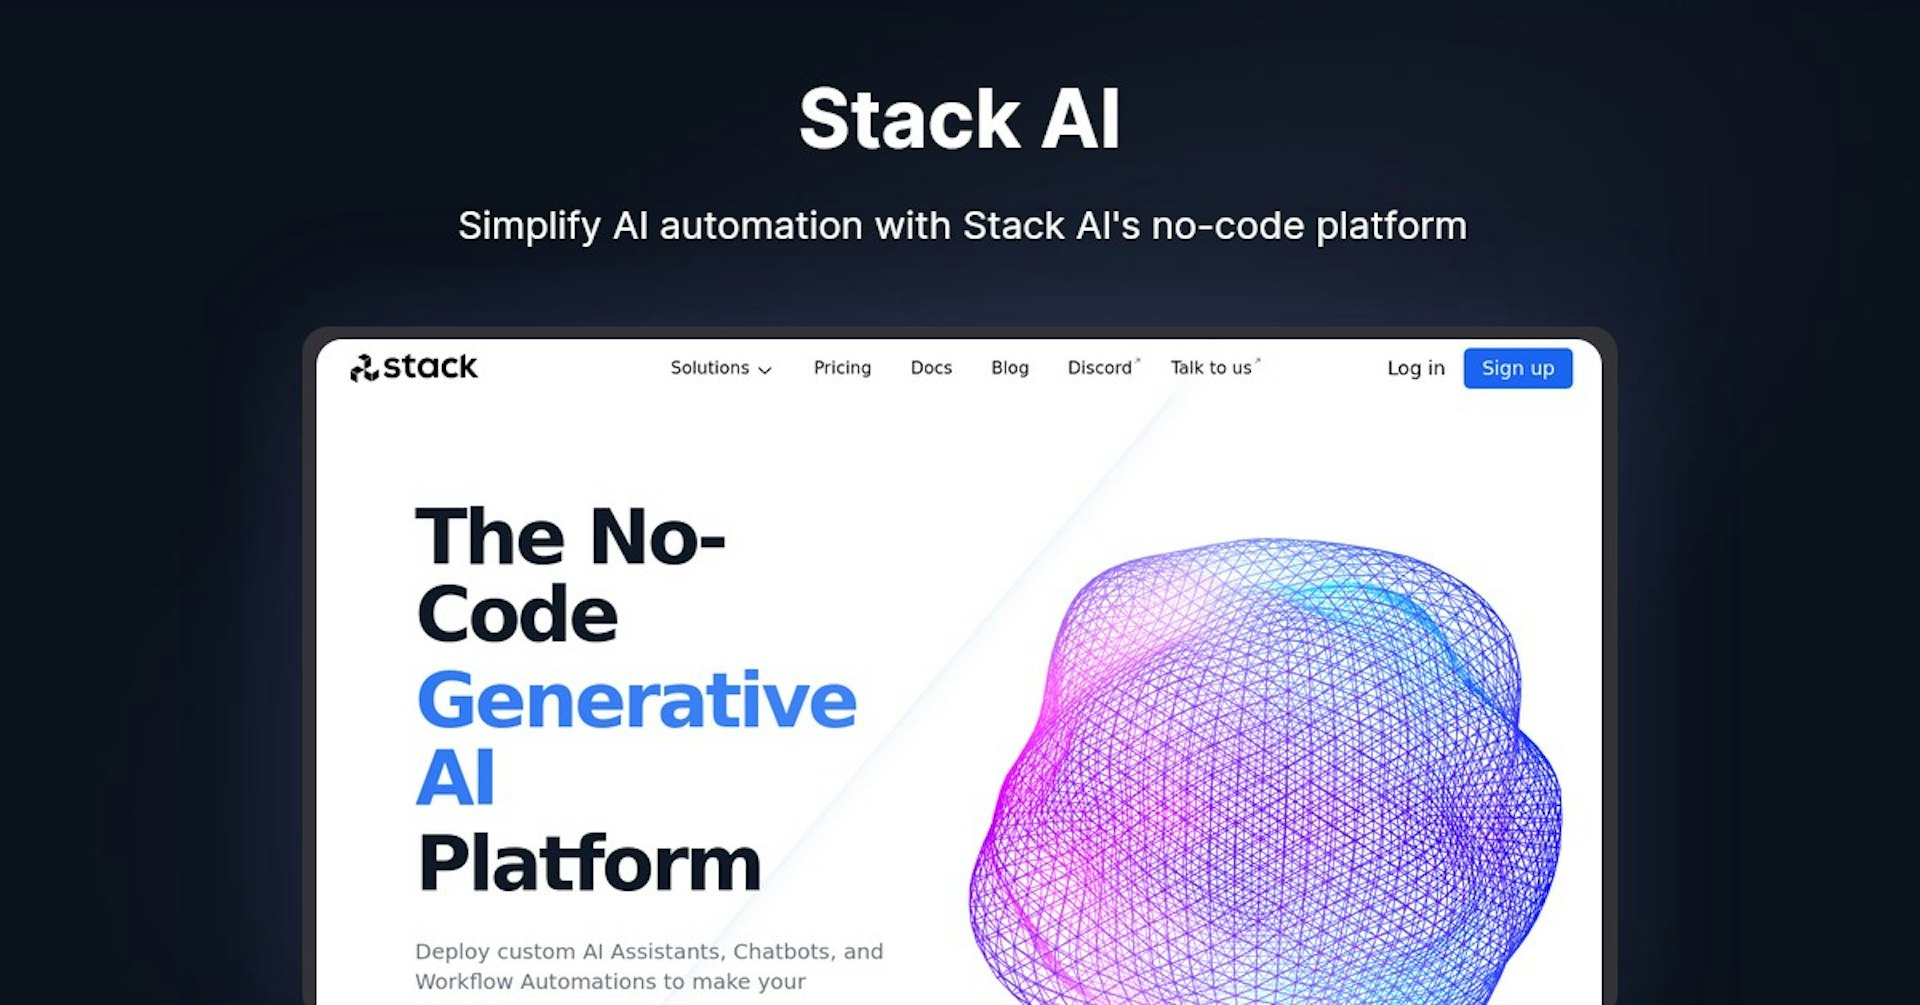 Stack AI